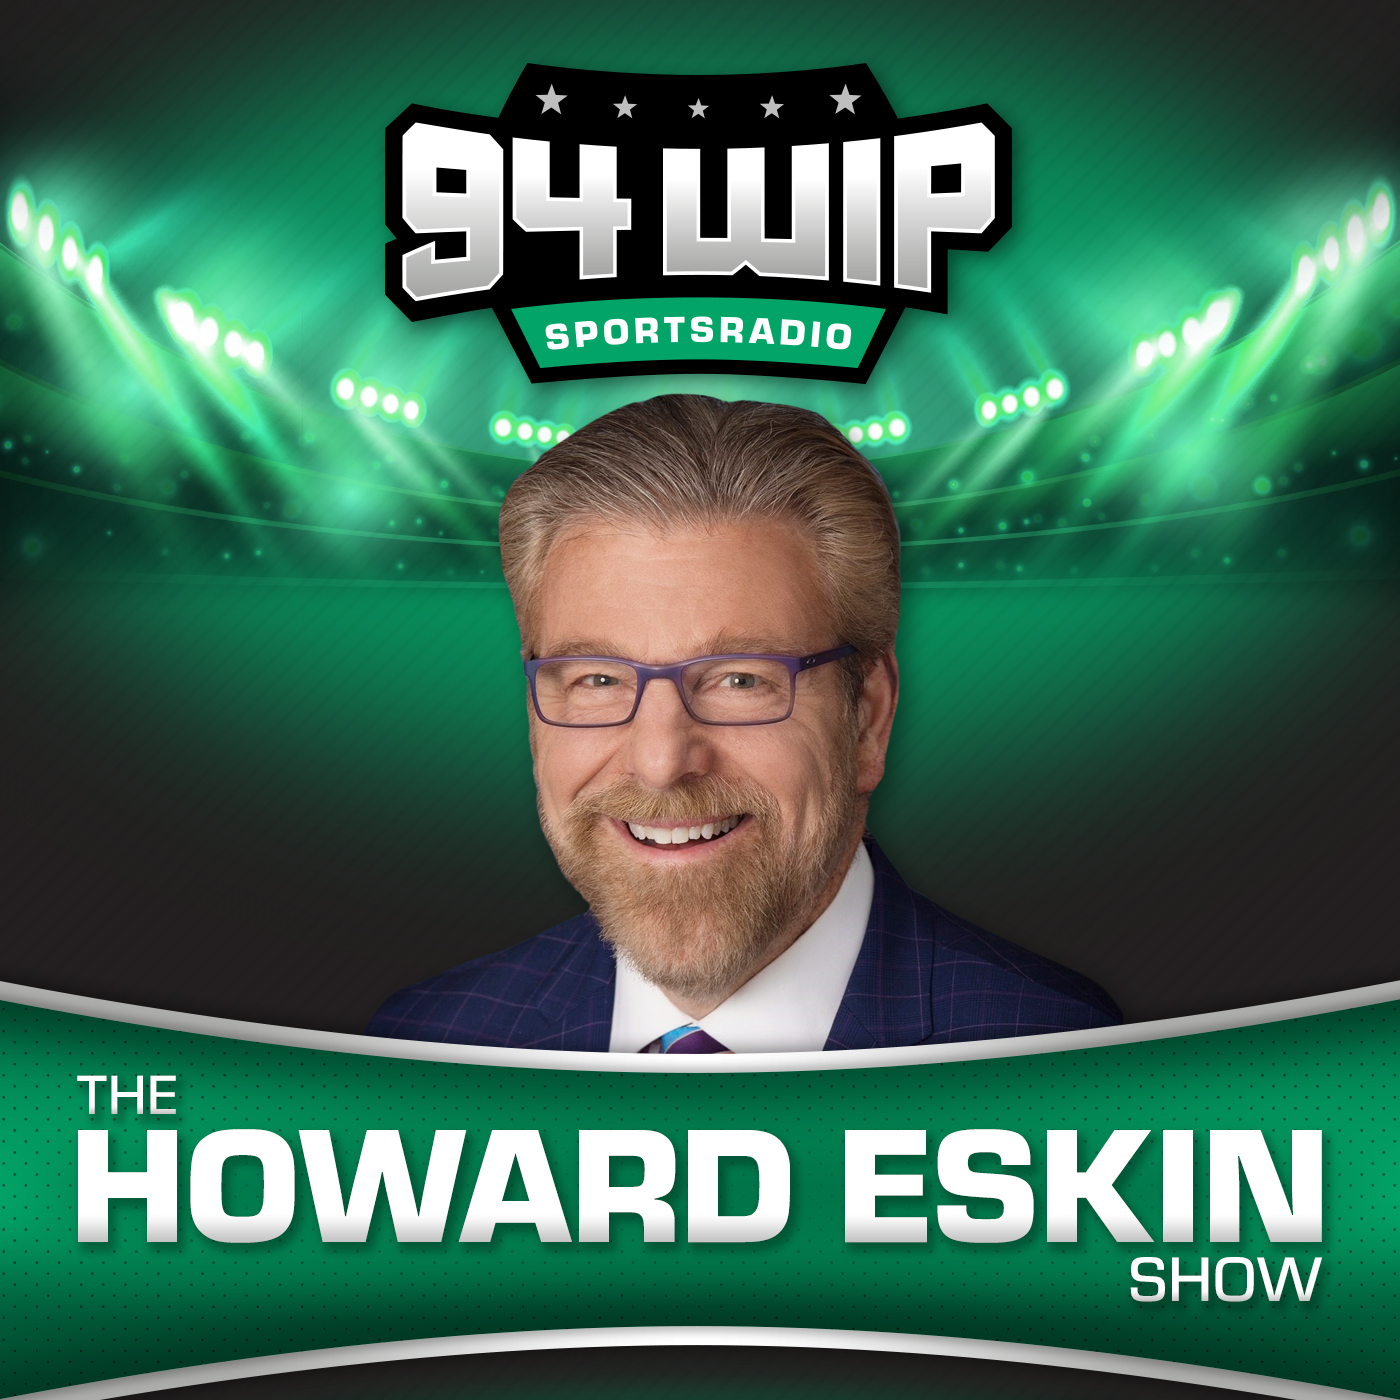 The Howard Eskin Show 10/16/21